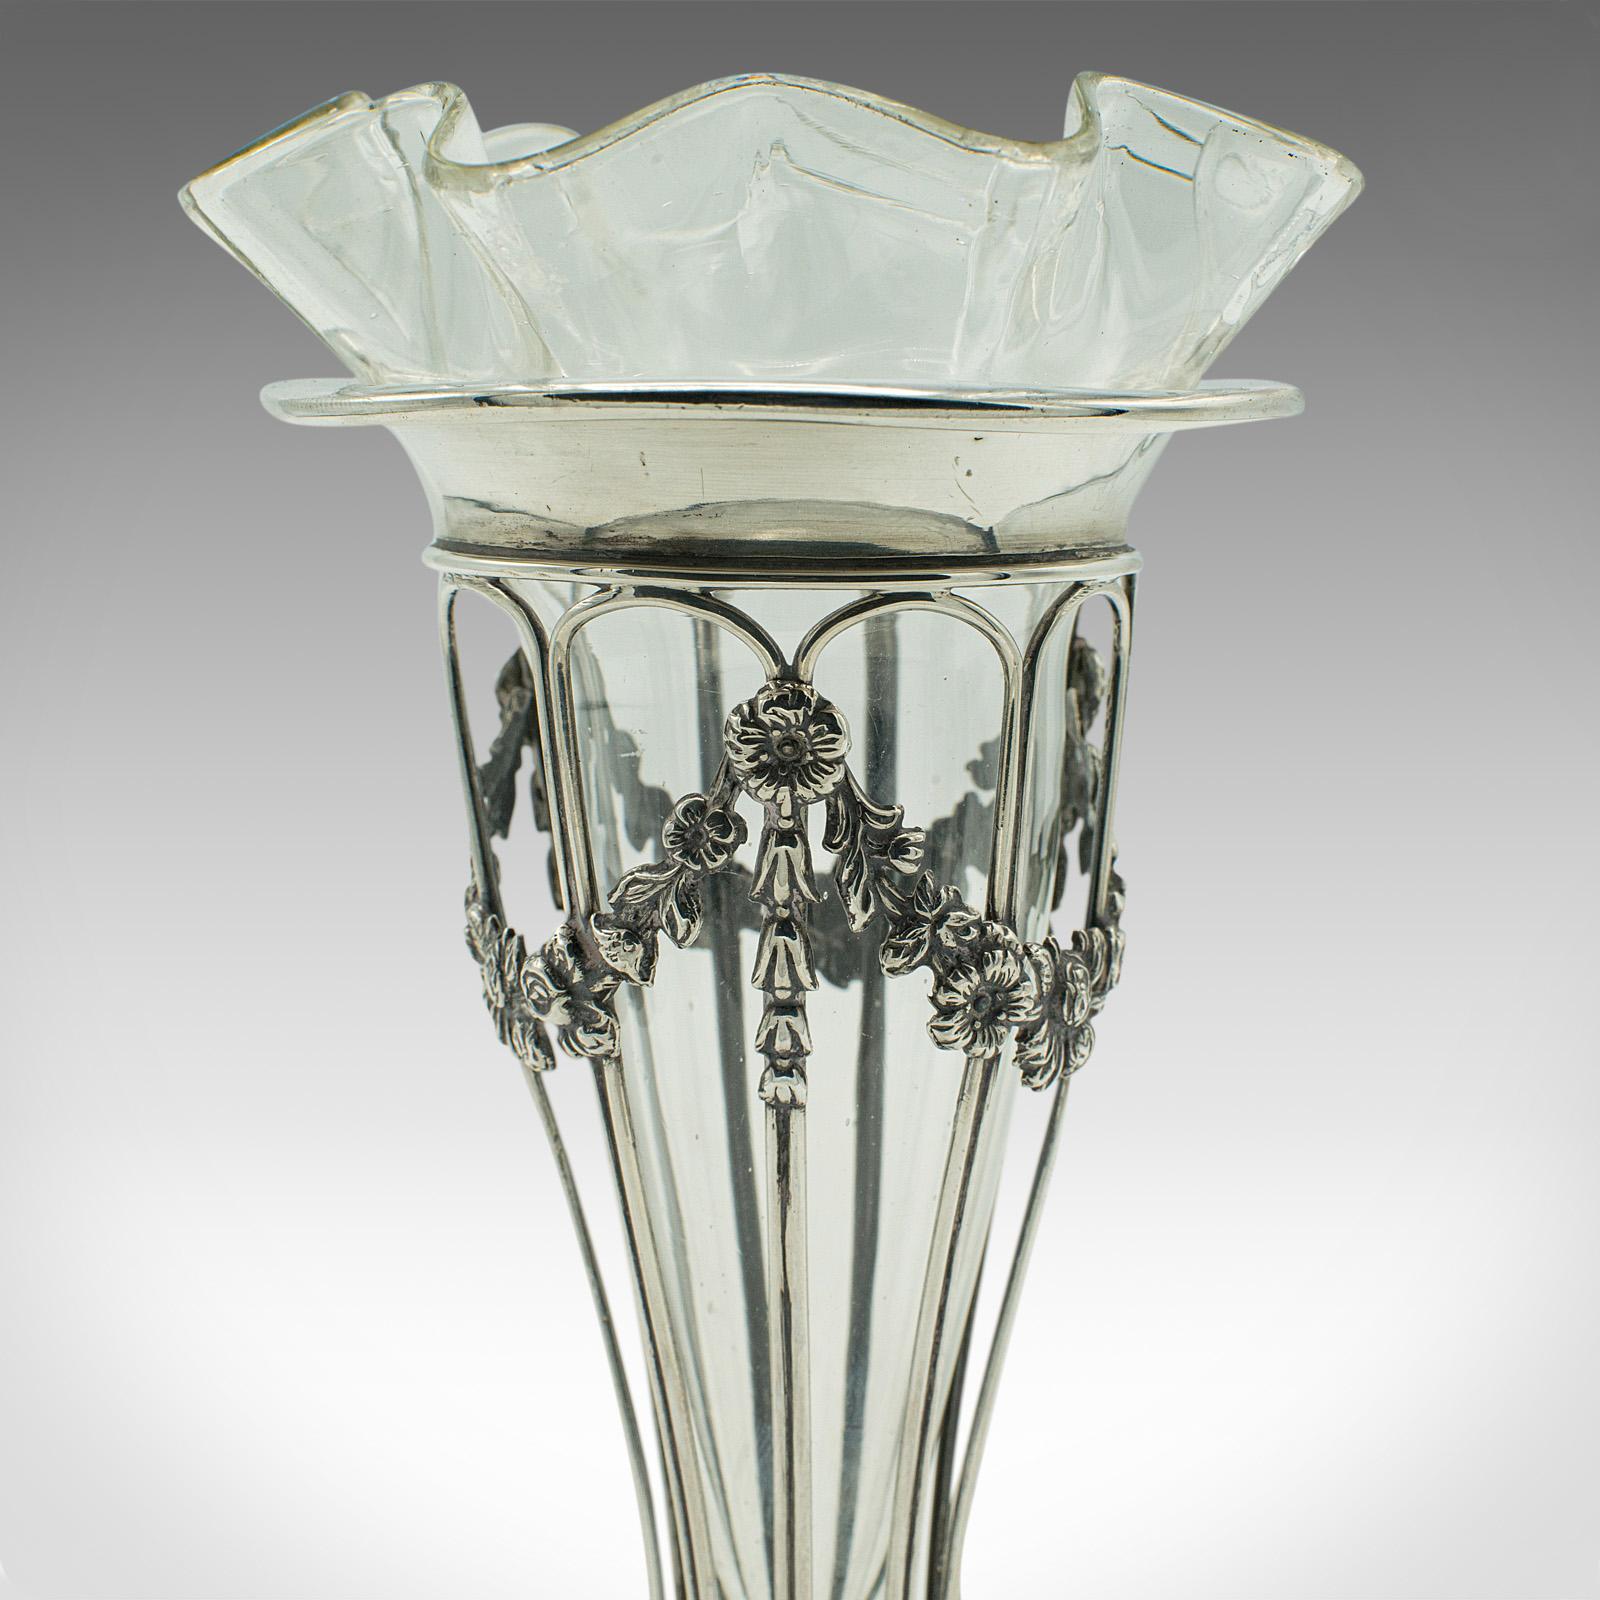 Small Antique Stem Vase, English, Silver, Glass, Decor, Art Nouveau, Edwardian For Sale 2